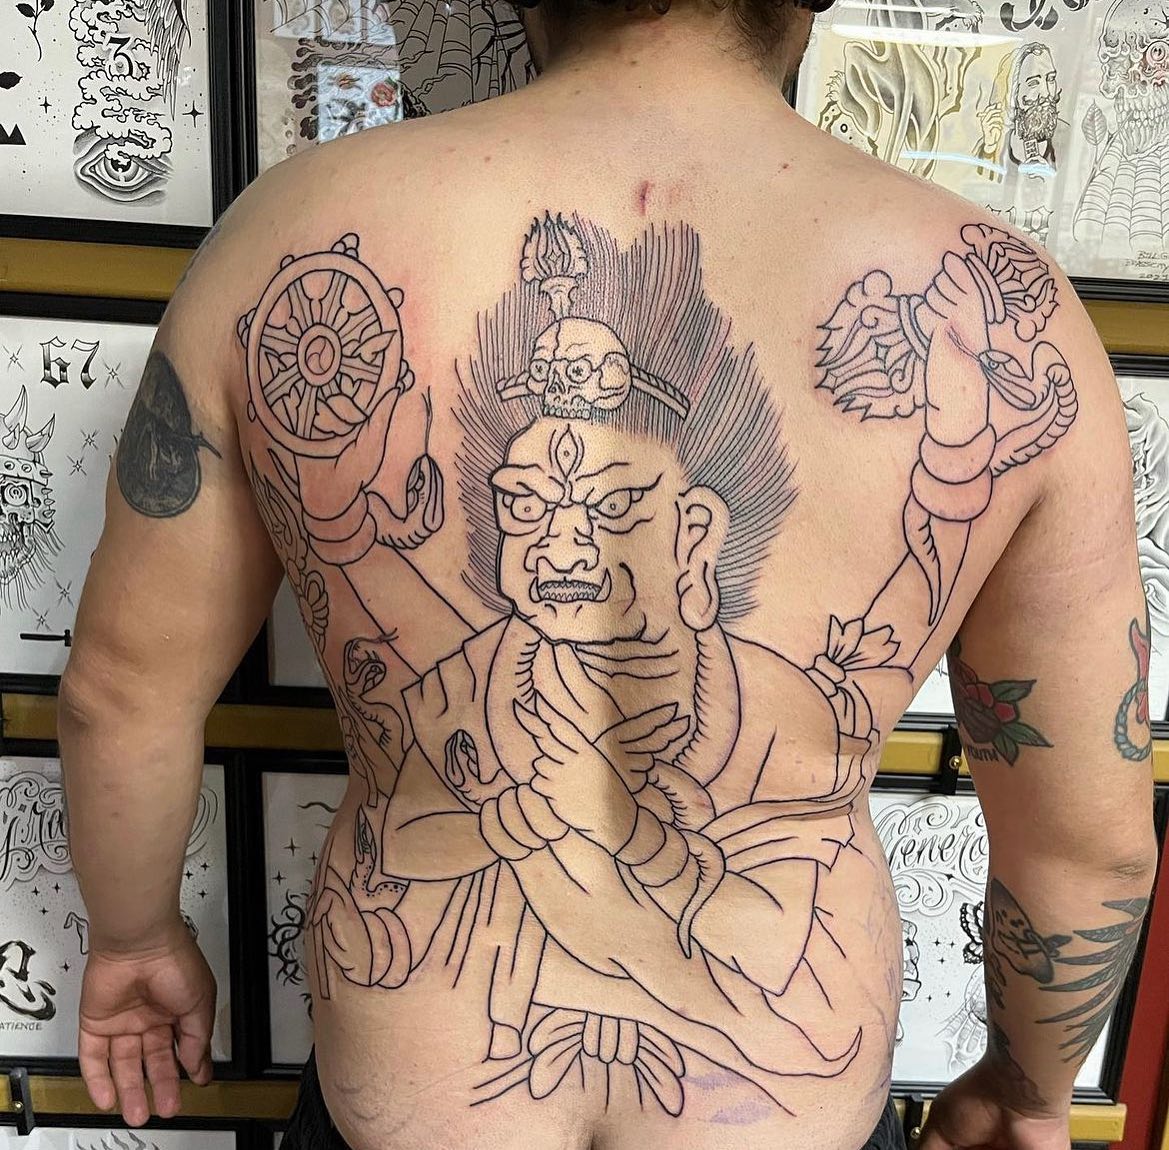 Tatuaje religioso en la espalda.